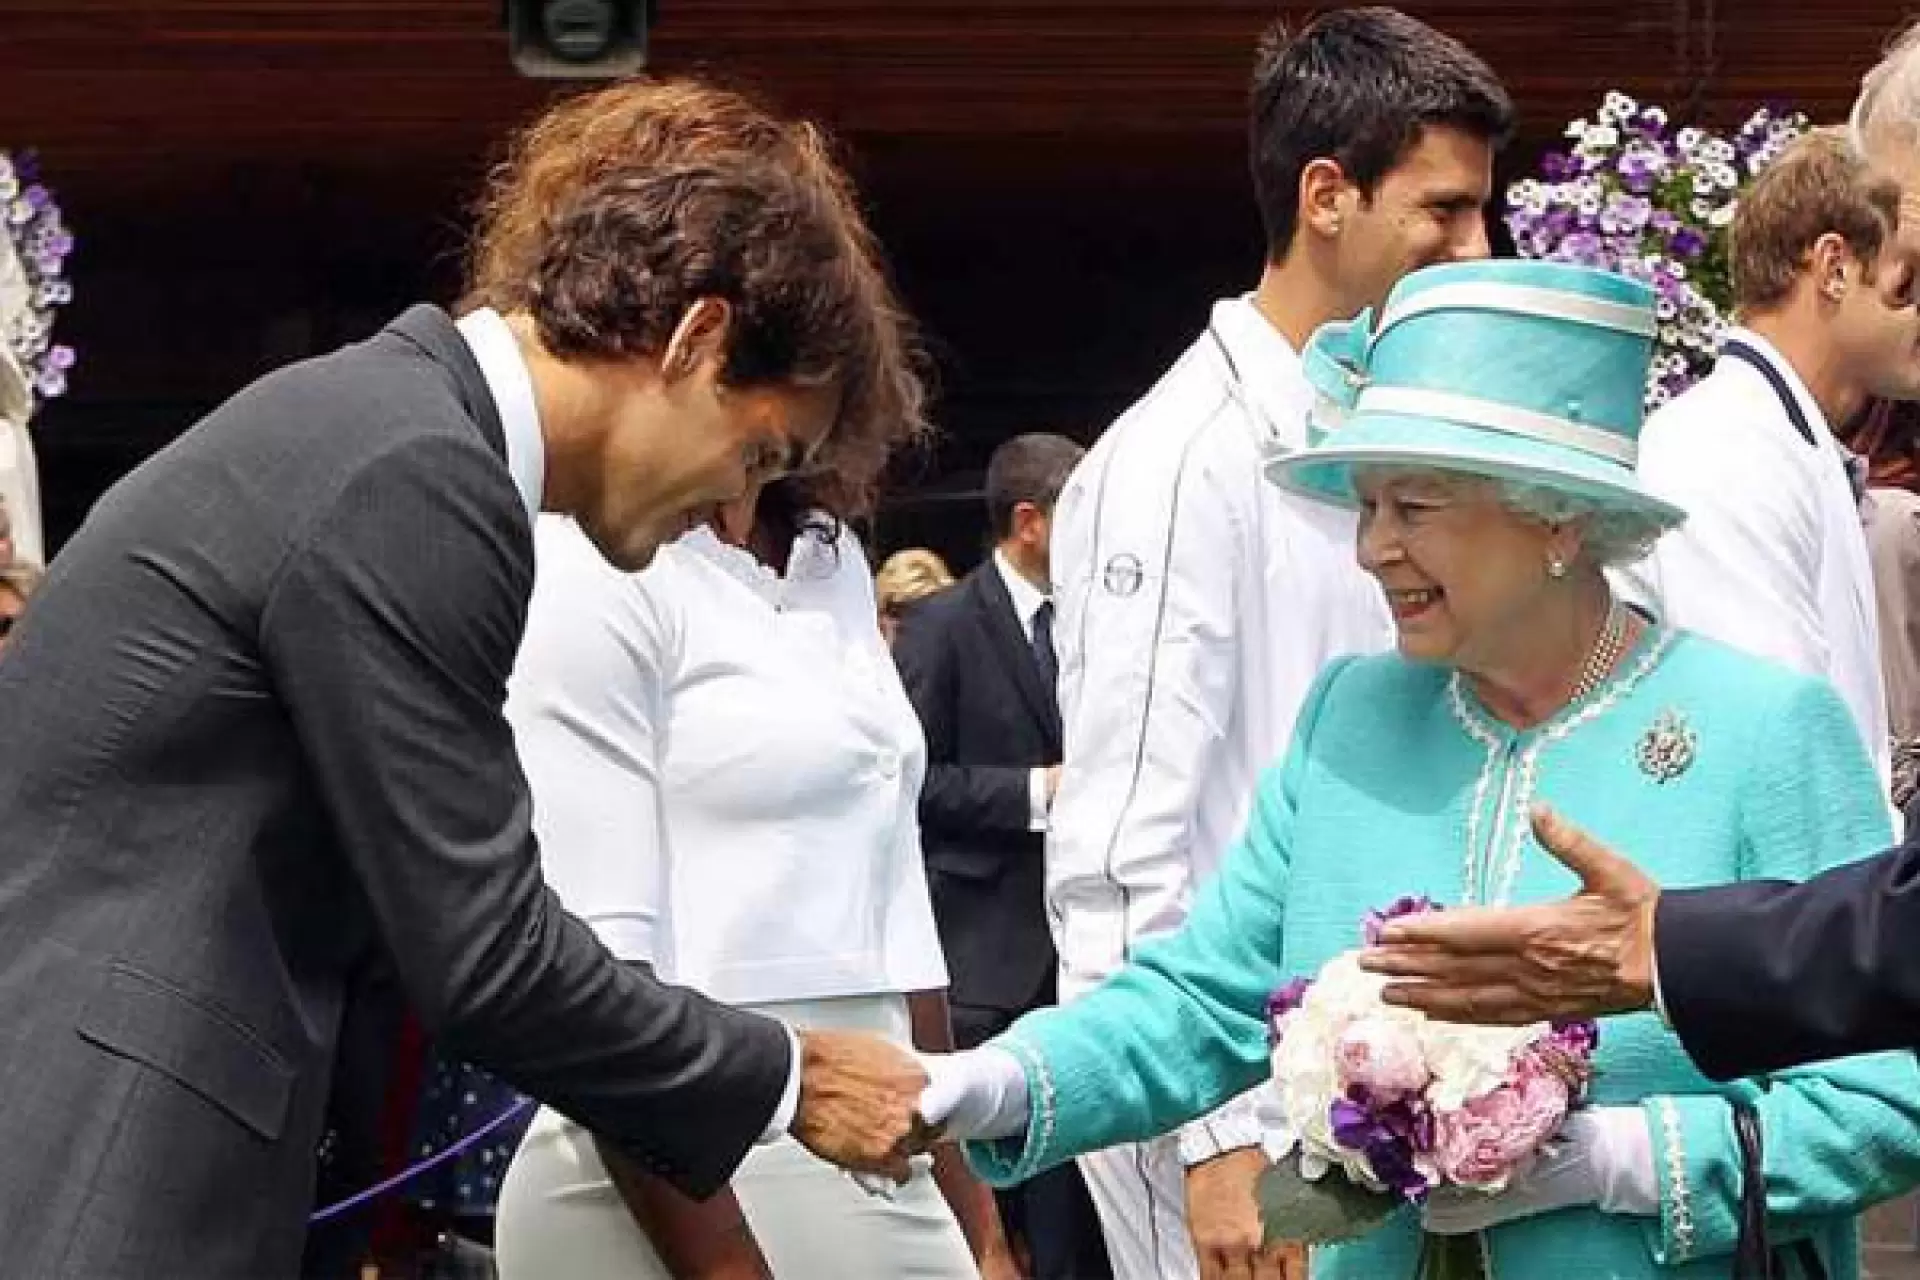 La reina Isabel II y Roger Federer. • Imagen: Tennis World.